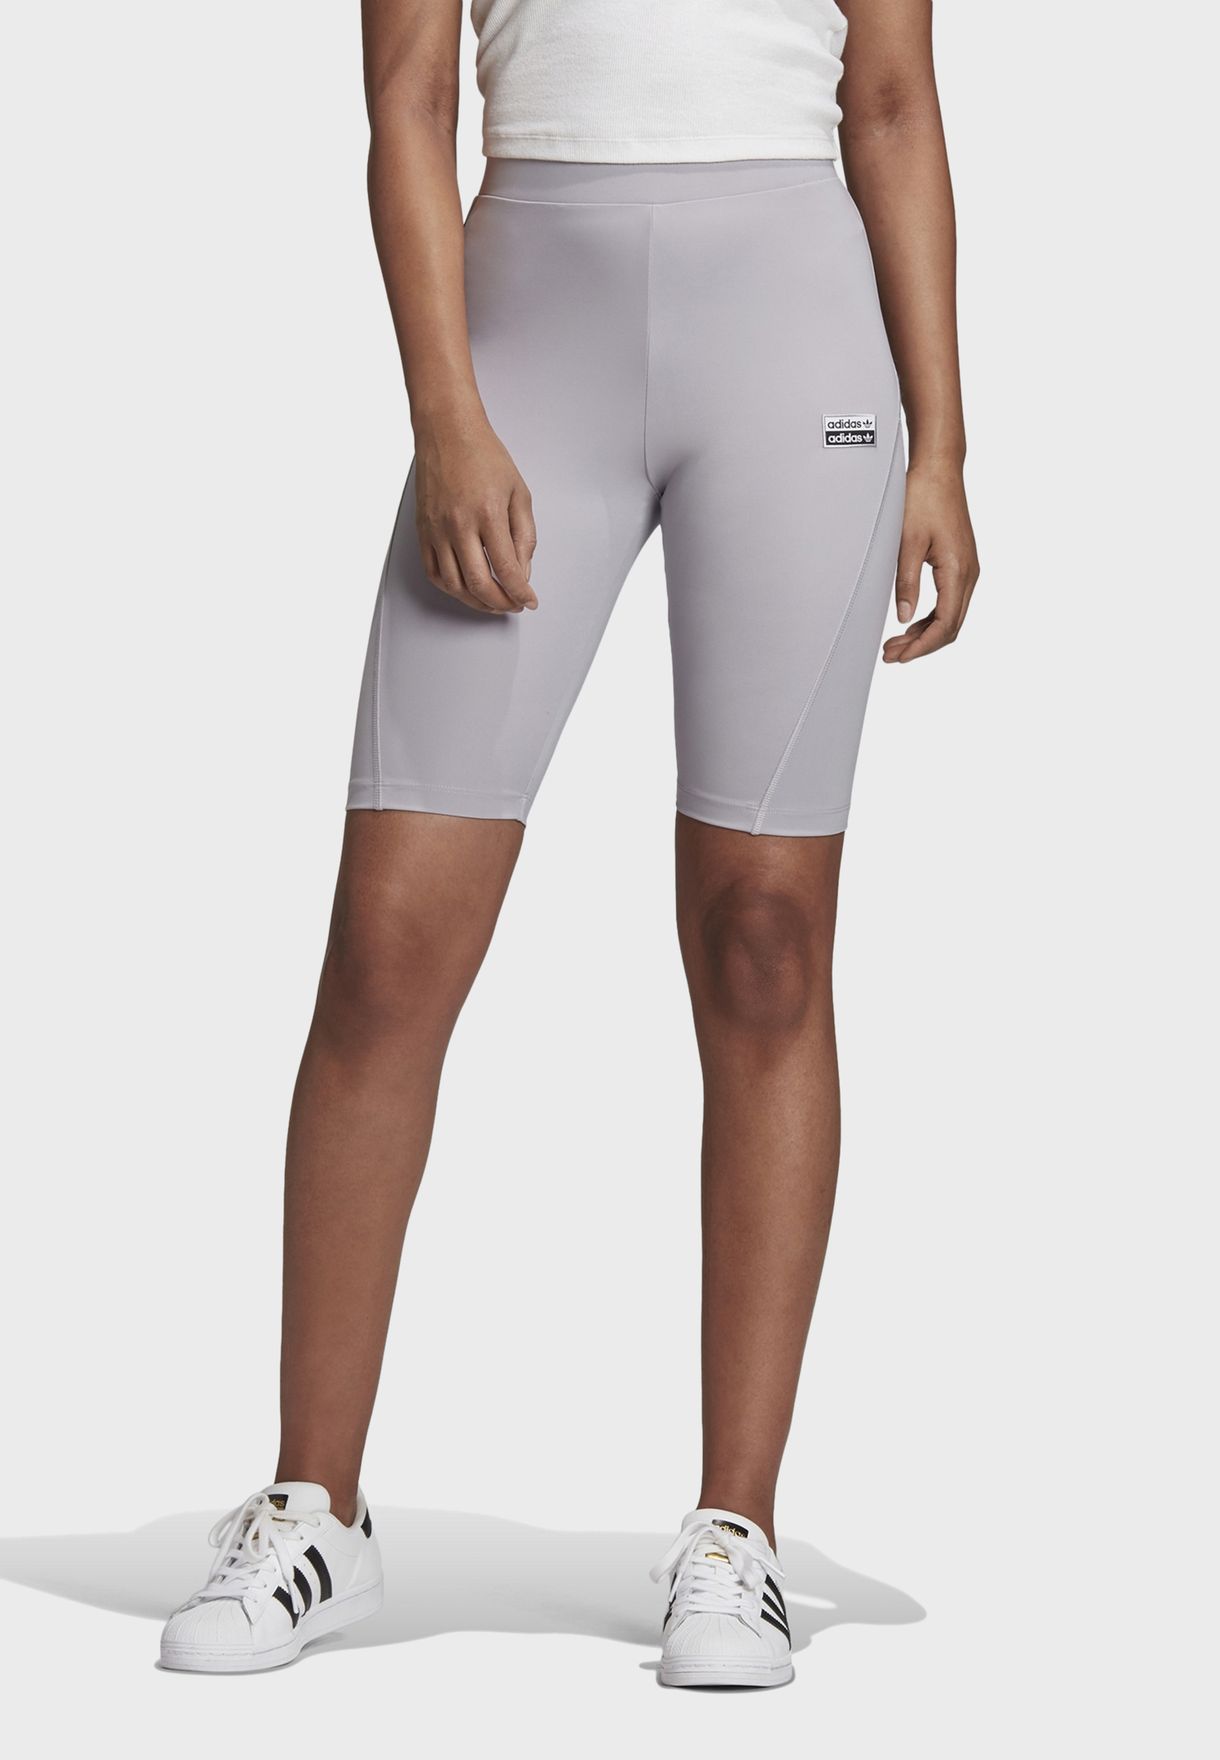 grey cycling shorts adidas